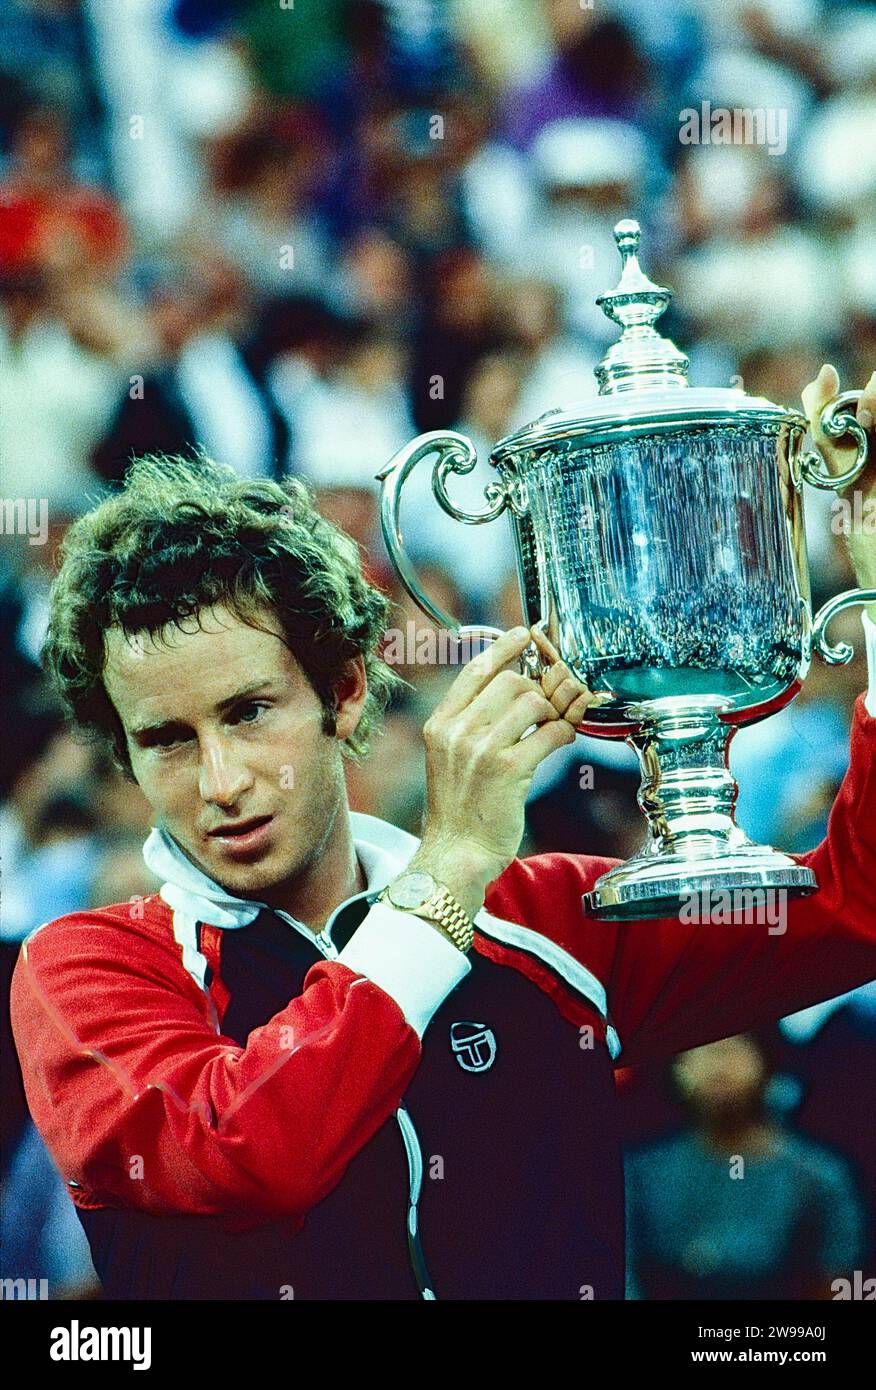 John McEnroe (USA) vainqueur du titre de Grand Chelem en simple masculin à l'US Open de tennis 1981. Banque D'Images